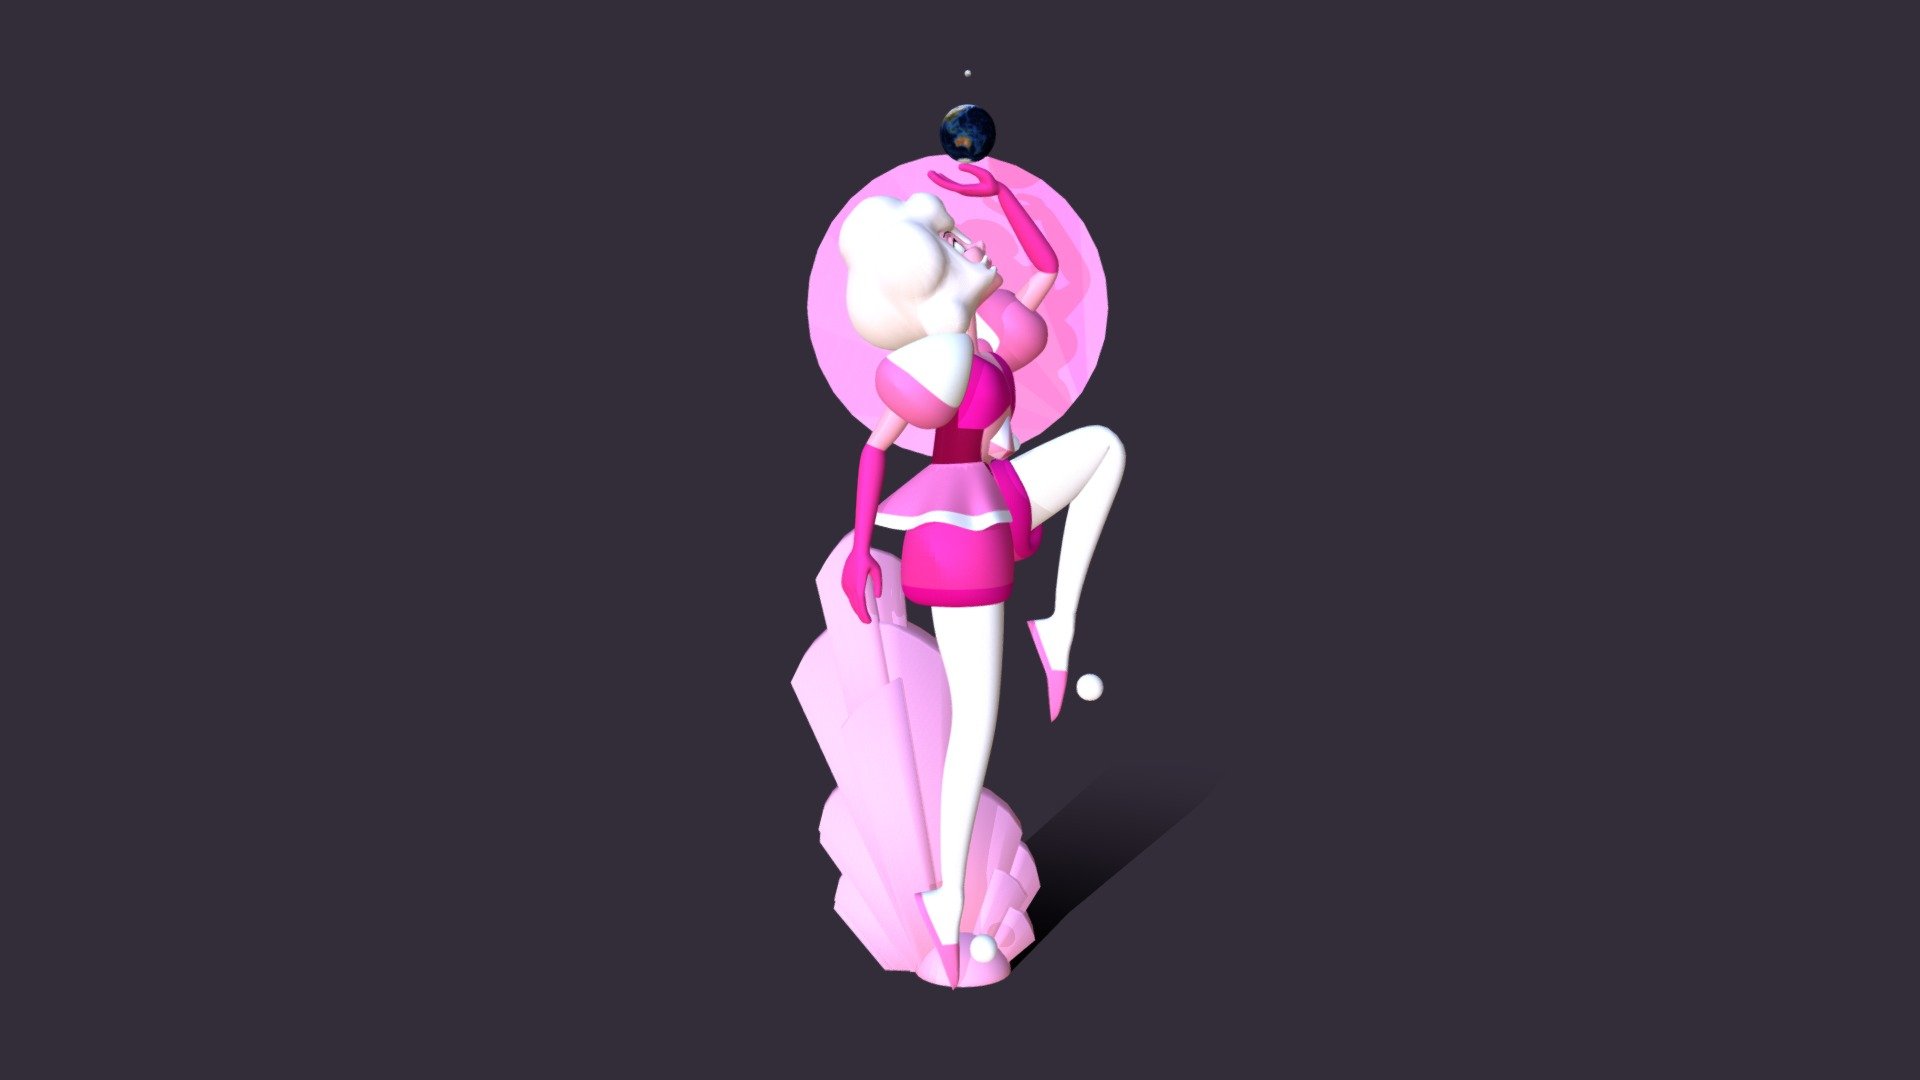 Mô hình 3D Pink Diamond của Steven Universe là tác phẩm nghệ thuật kỳ diệu đến từ vũ trụ Steven. Với đường nét mịn màng và chi tiết hoàn hảo, mô hình này sẽ đưa bạn vào những cuộc phiêu lưu thần kỳ và mang đến cho bạn trải nghiệm tuyệt vời.